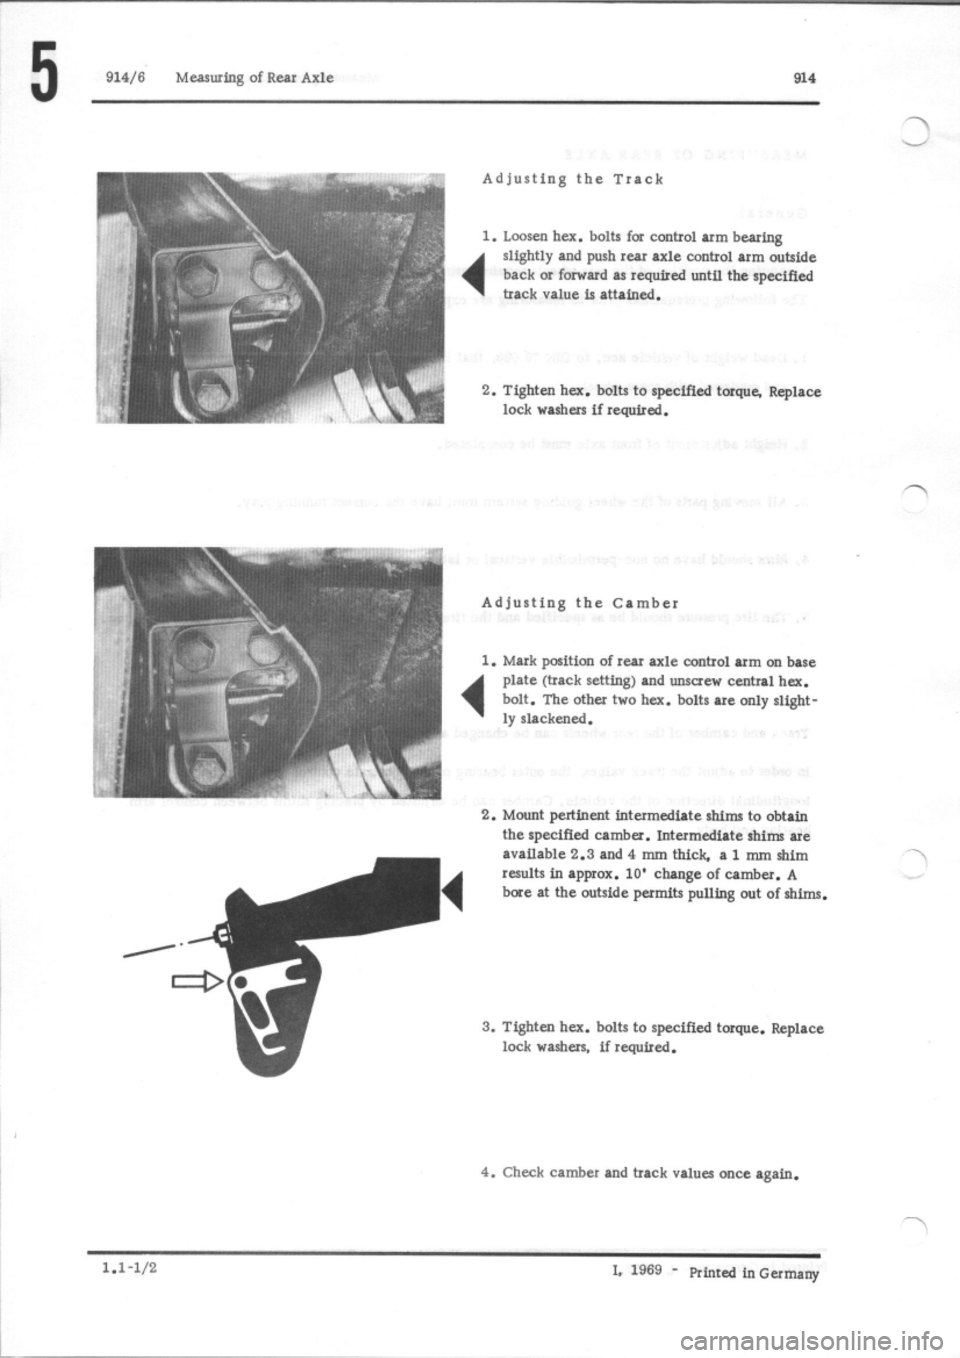 PORSCHE 914 1976 1.G Rear Axle User Guide 